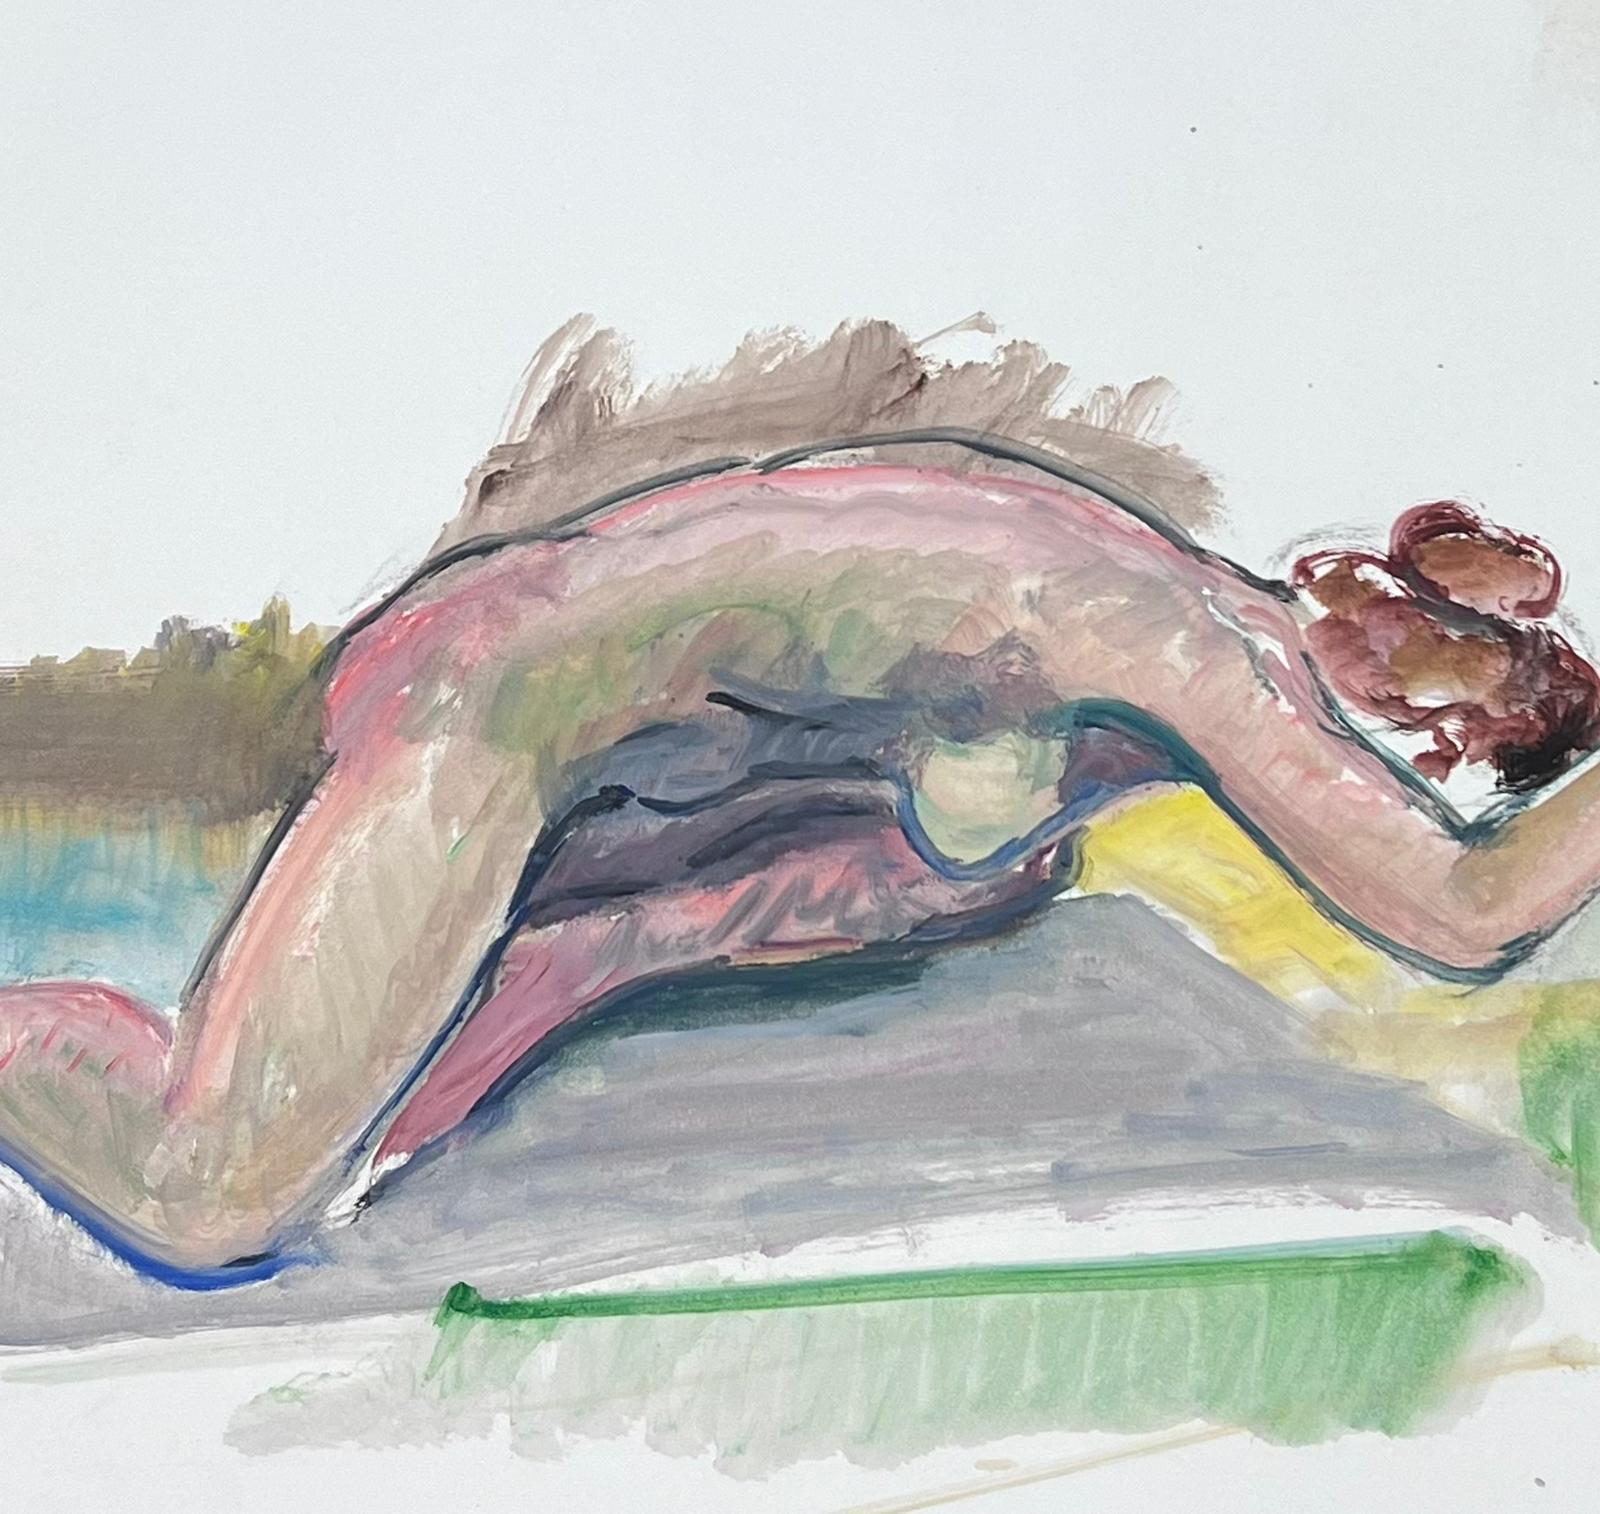 Le modèle Artistics
Femme nue modèle
École française, vers 1970  
peinture à l'huile sur carton, non encadrée
taille : 19 x 25.5 pouces
état : globalement très bon, quelques légères marques à la surface mais rien de préjudiciable à l'attrait et à